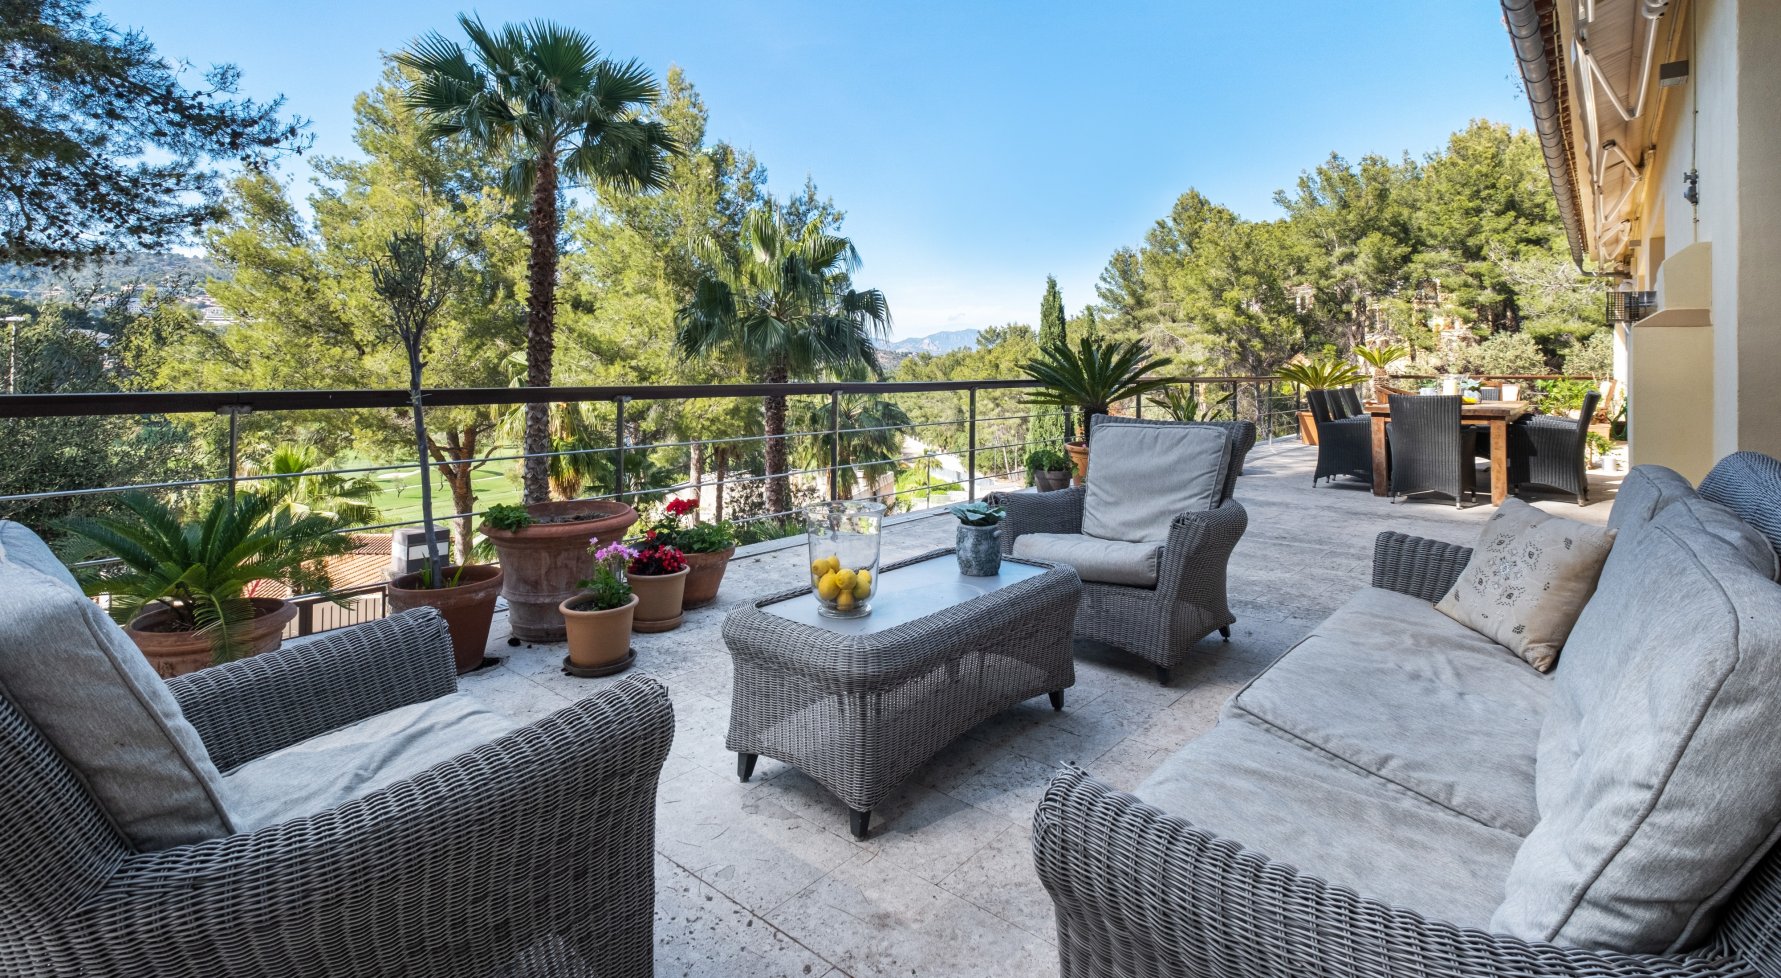 Immobilie in 07013 Mallorca - Palma de Mallorca: Herrliche Villa in exzellenter Lage direkt am Golfplatz von Son Vida - bild 1